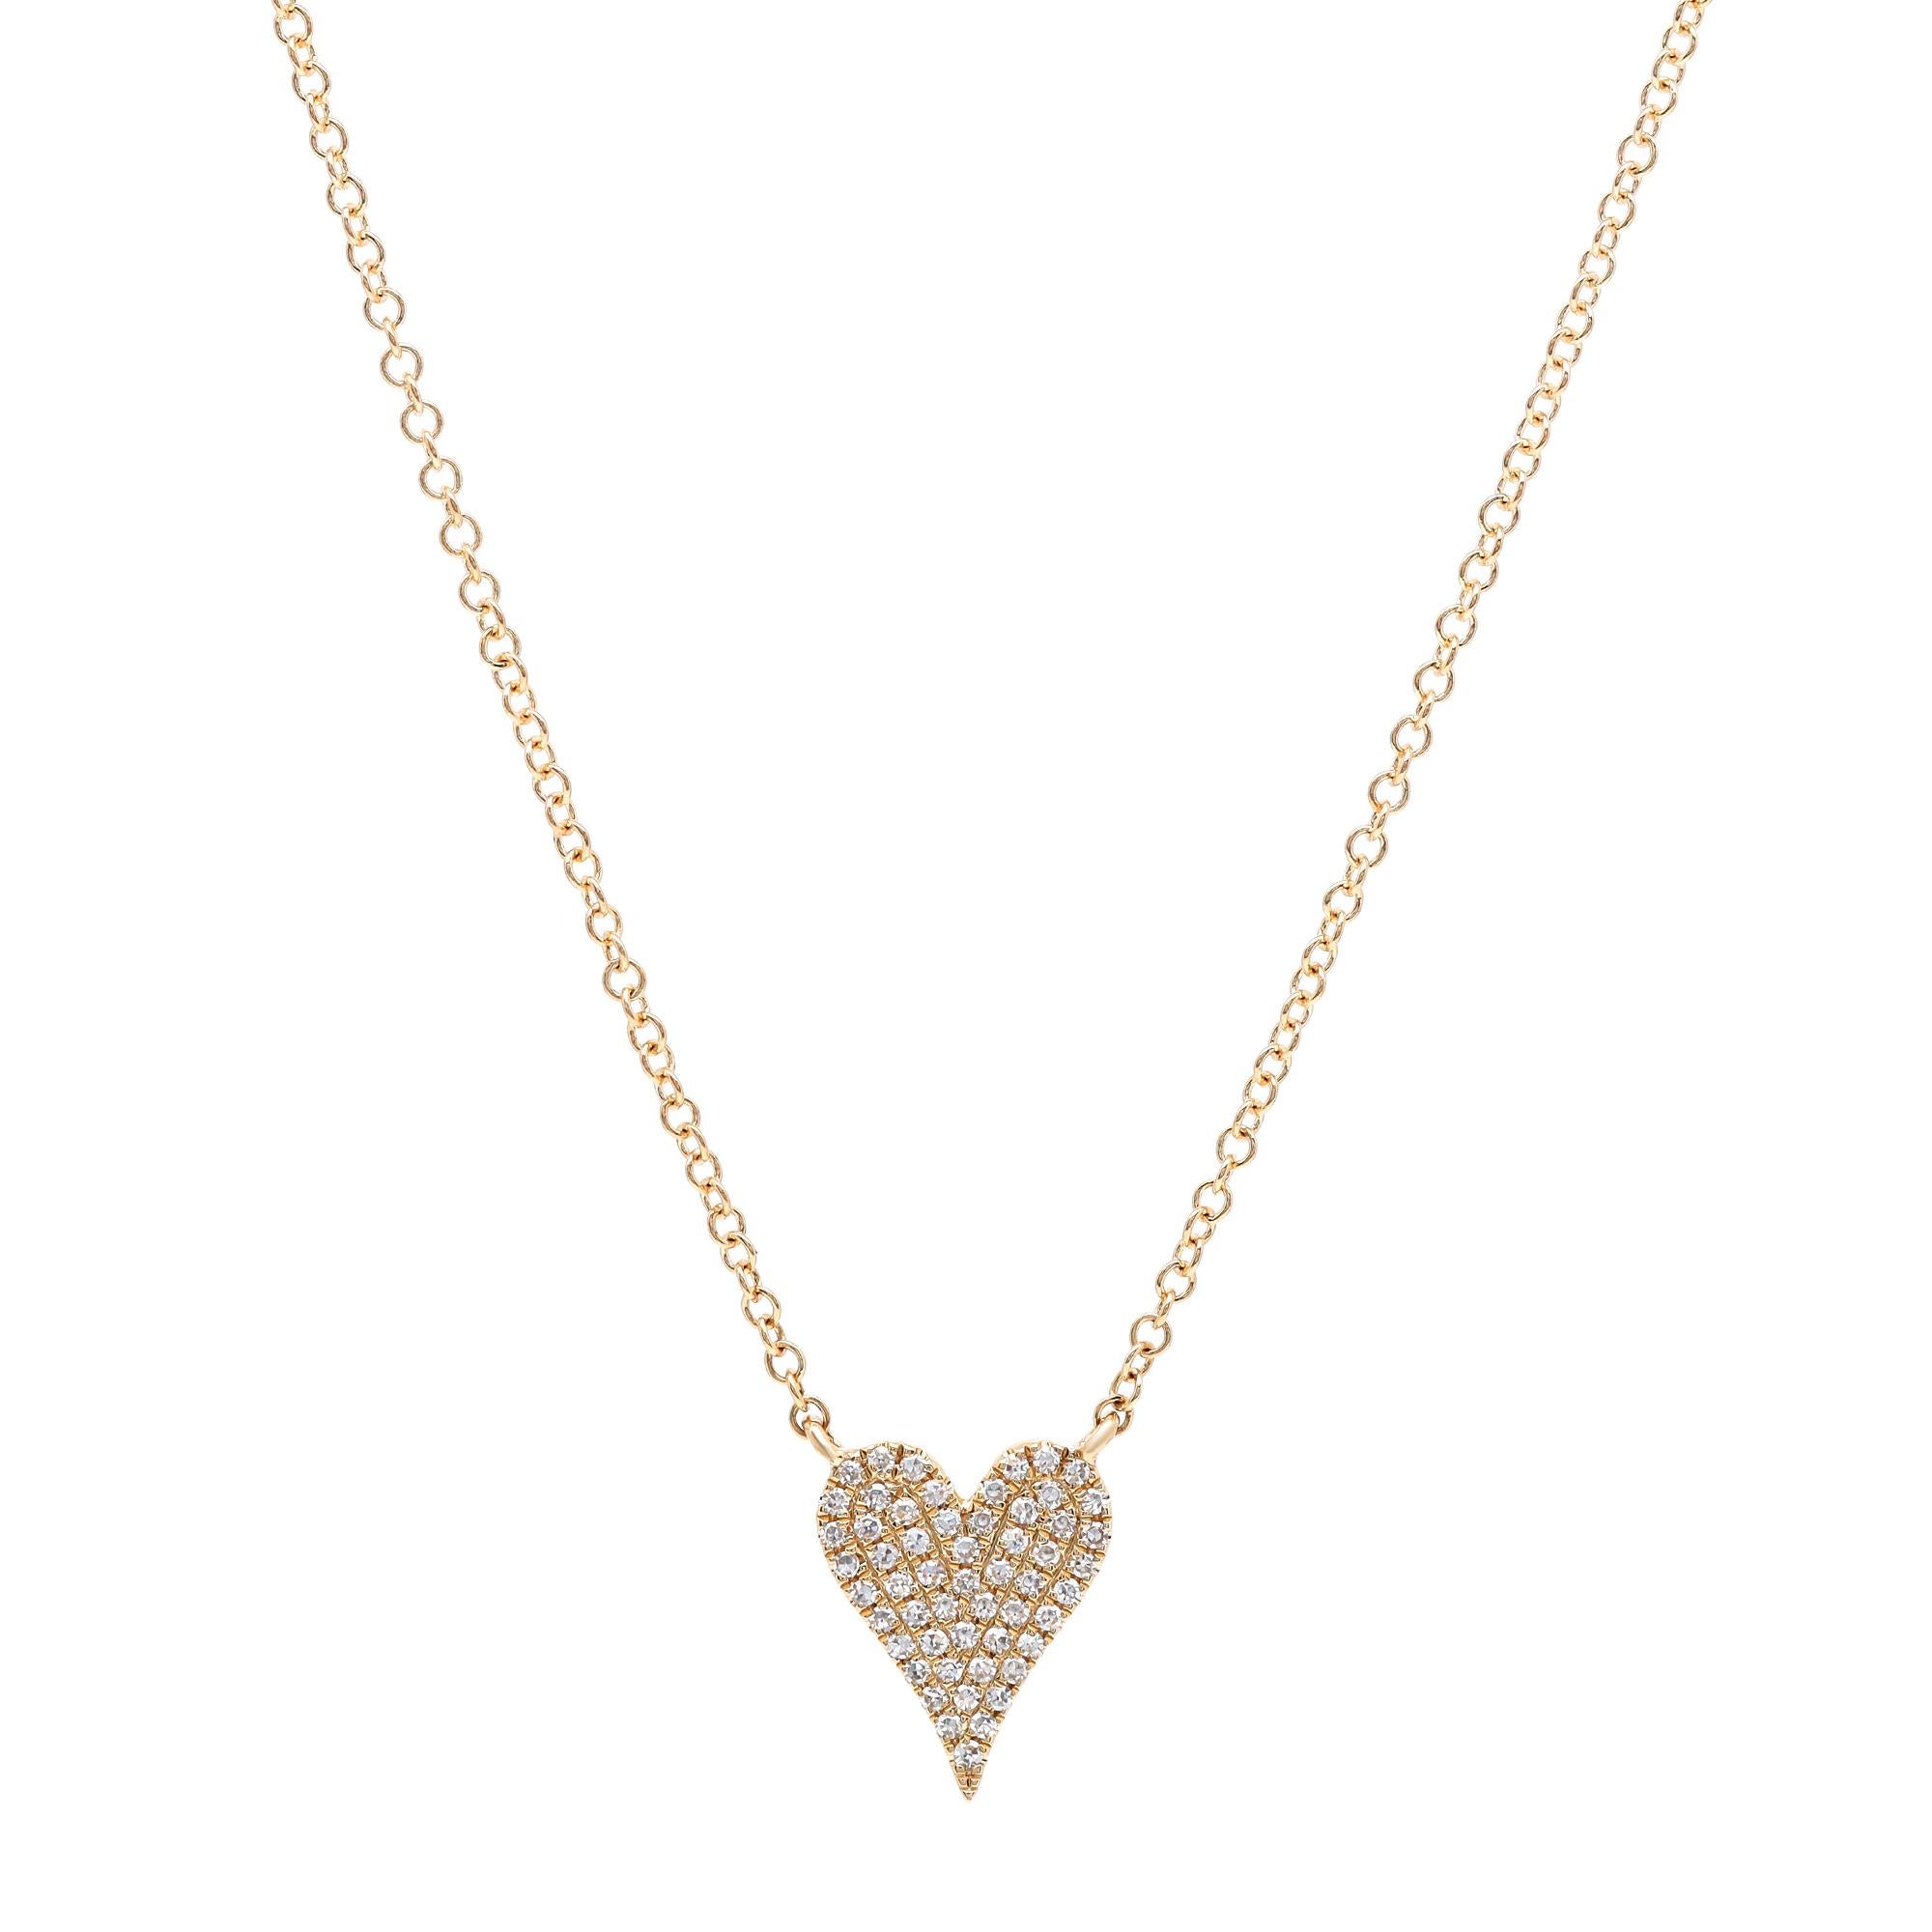 Rachel Koen Collier pendentif cœur en or jaune 14 carats avec diamants pavés 0,11 carat poids total